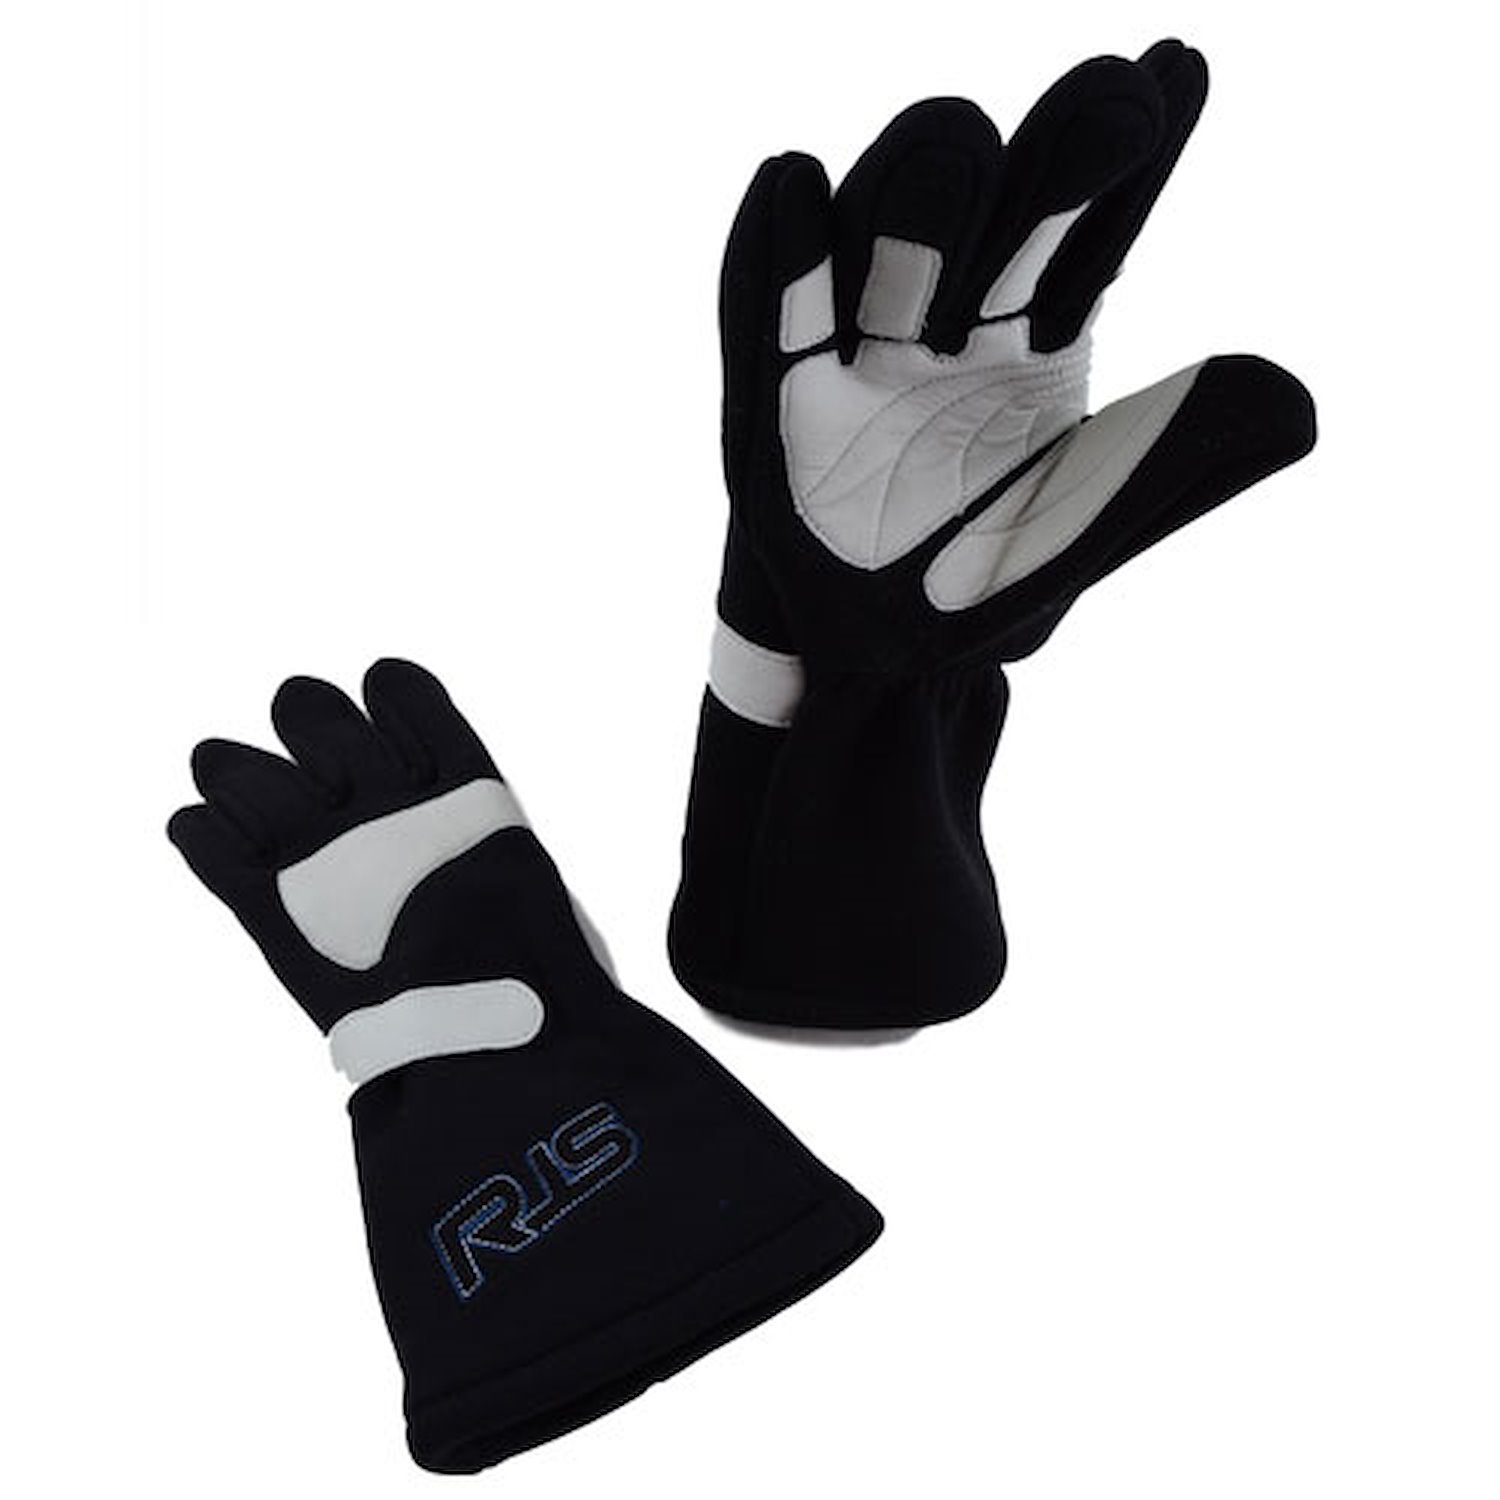 SFI 20 Racing Gloves Large